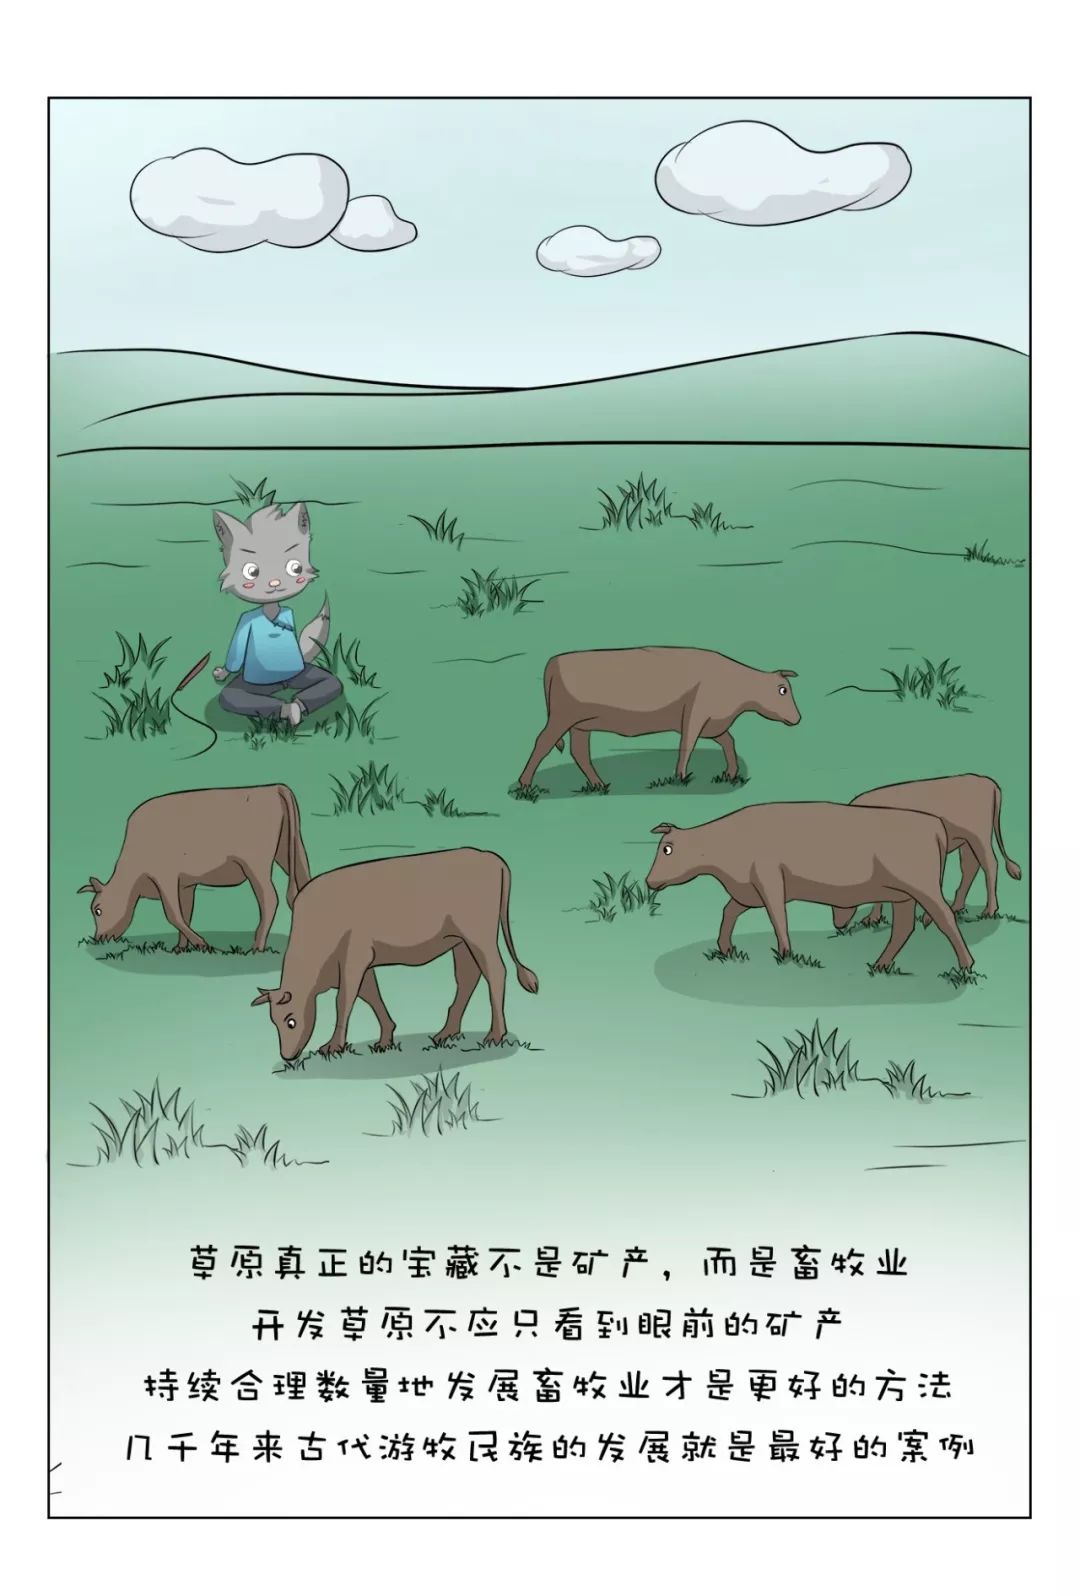 《保護自然野生動物小常識》手冊 萌寵 第10張